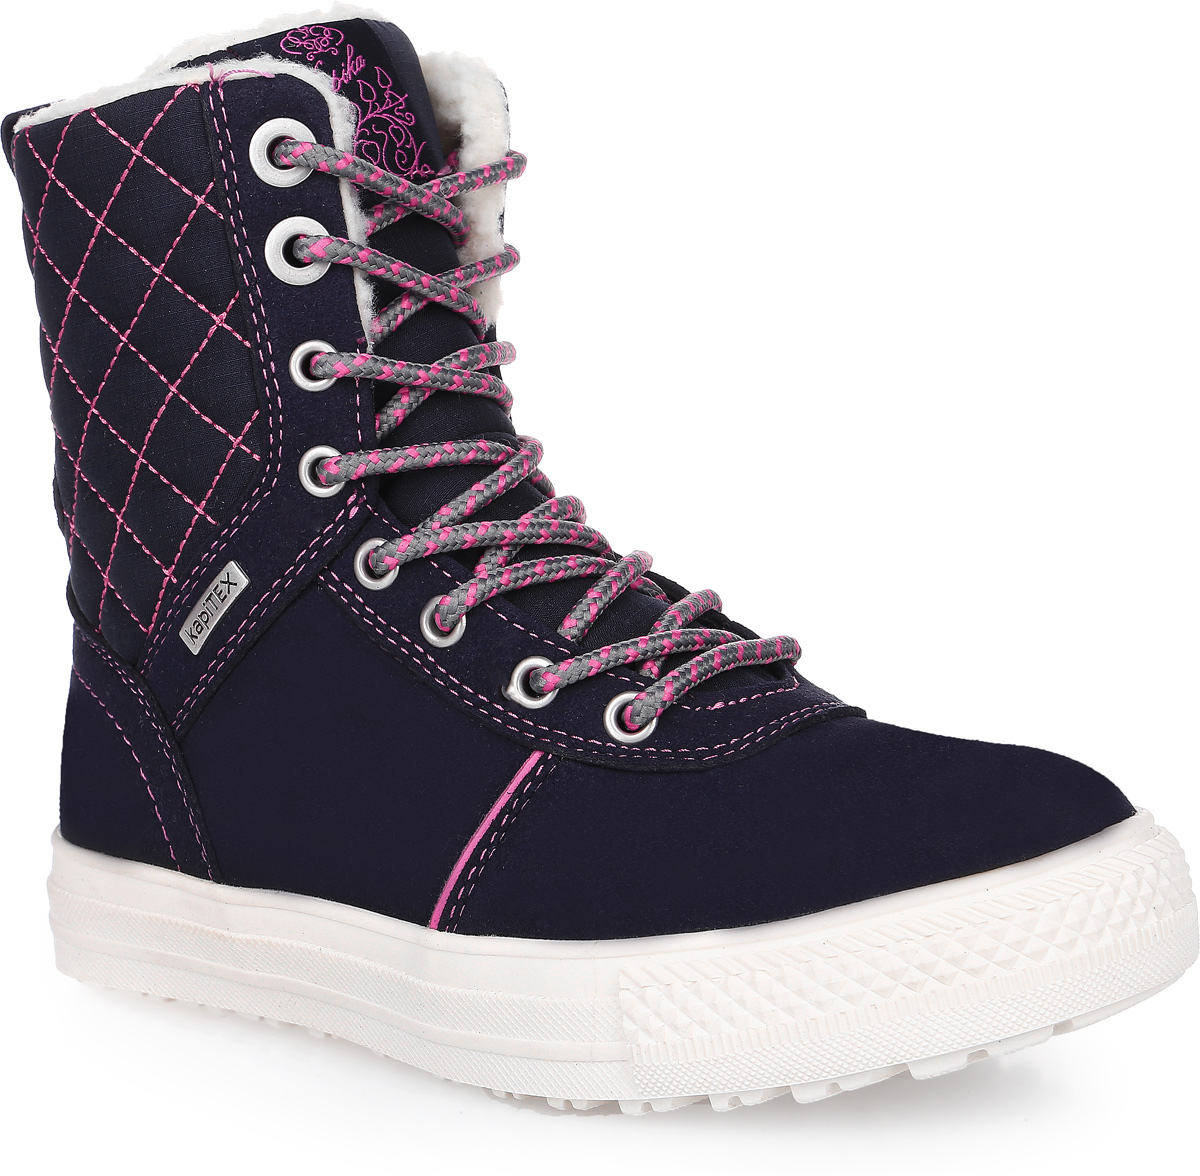 Ботинки для девочки Kapika, цвет: темно-синий, розовый. 43190-2. Размер 32